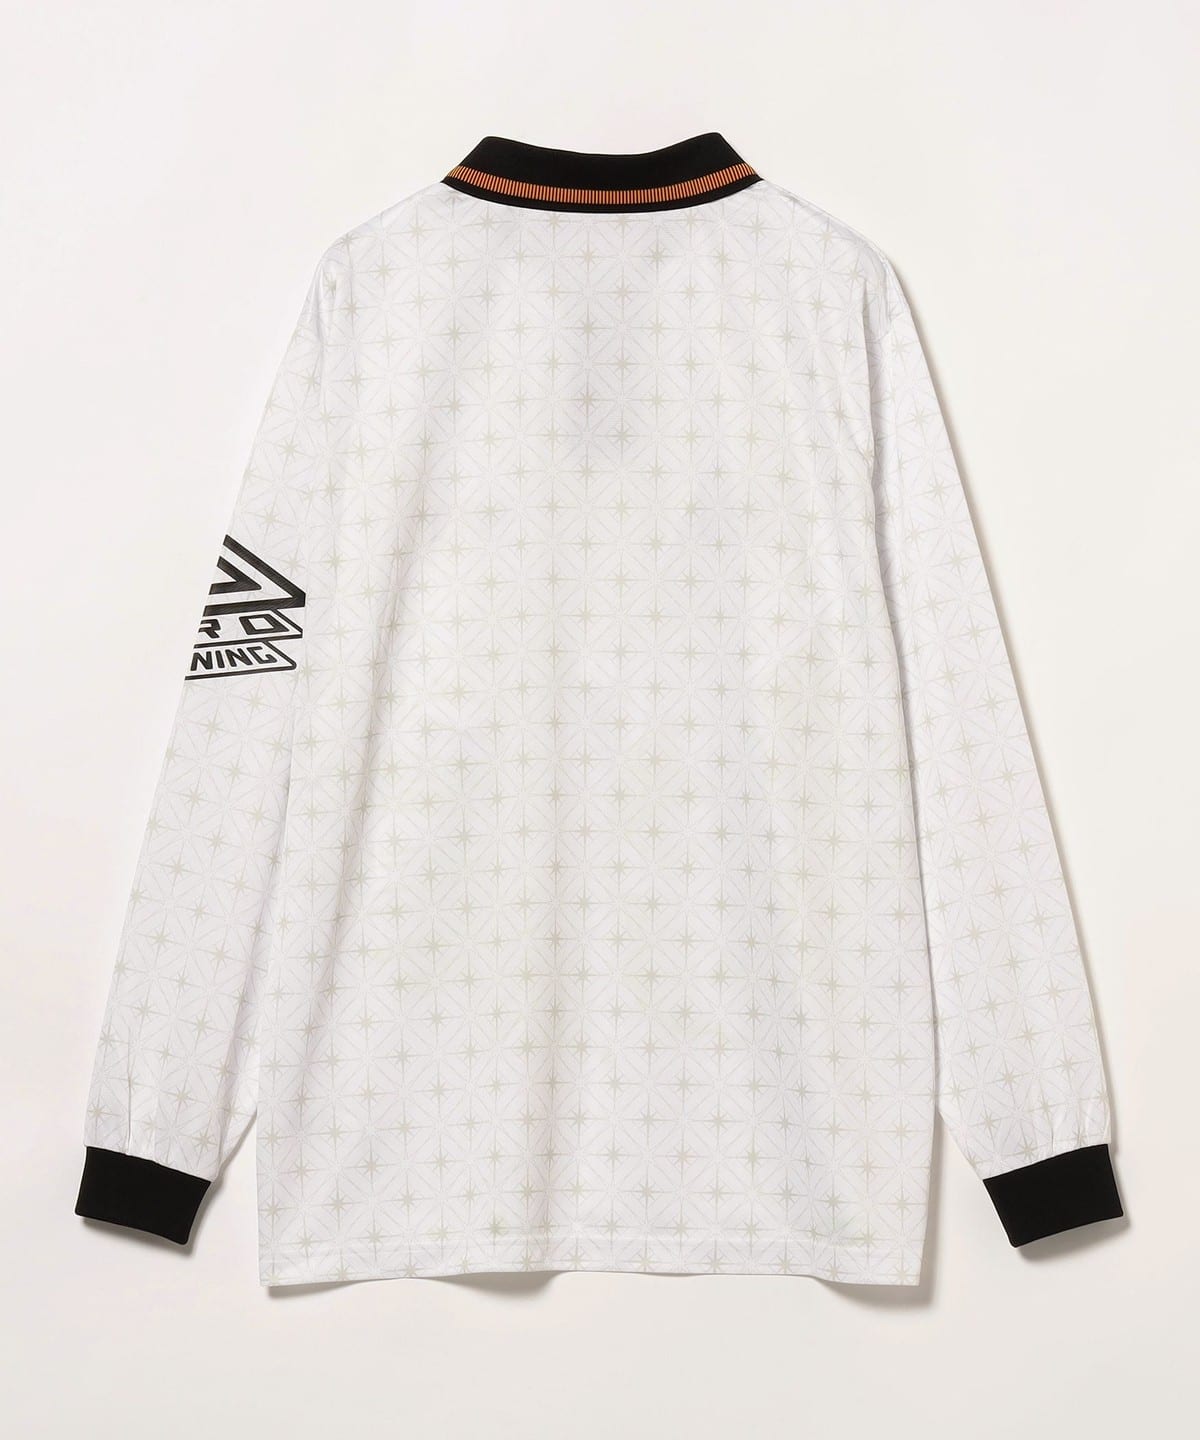 13,860円UMBRO x BoTT x BEAMS T Game Shirt White